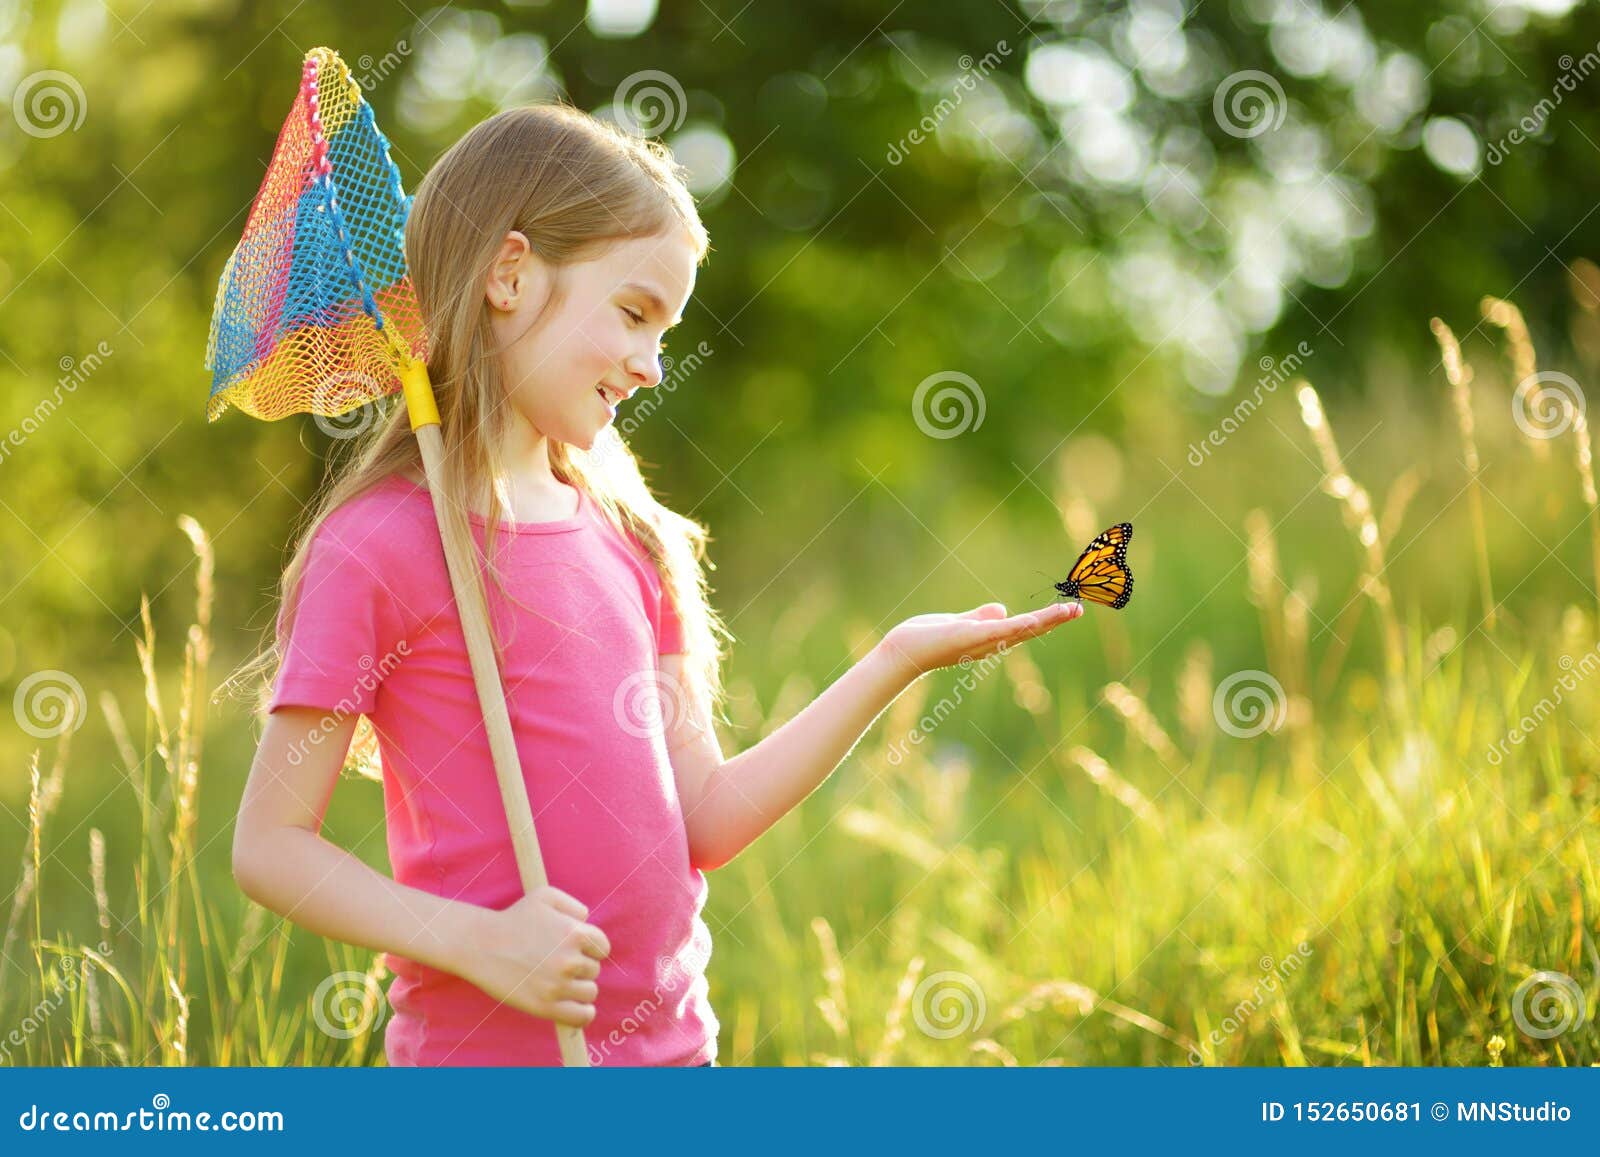 Farfalle Di Cattura E Insetti Della Bambina Adorabile Con Il Suo Mestolo Net Natura D